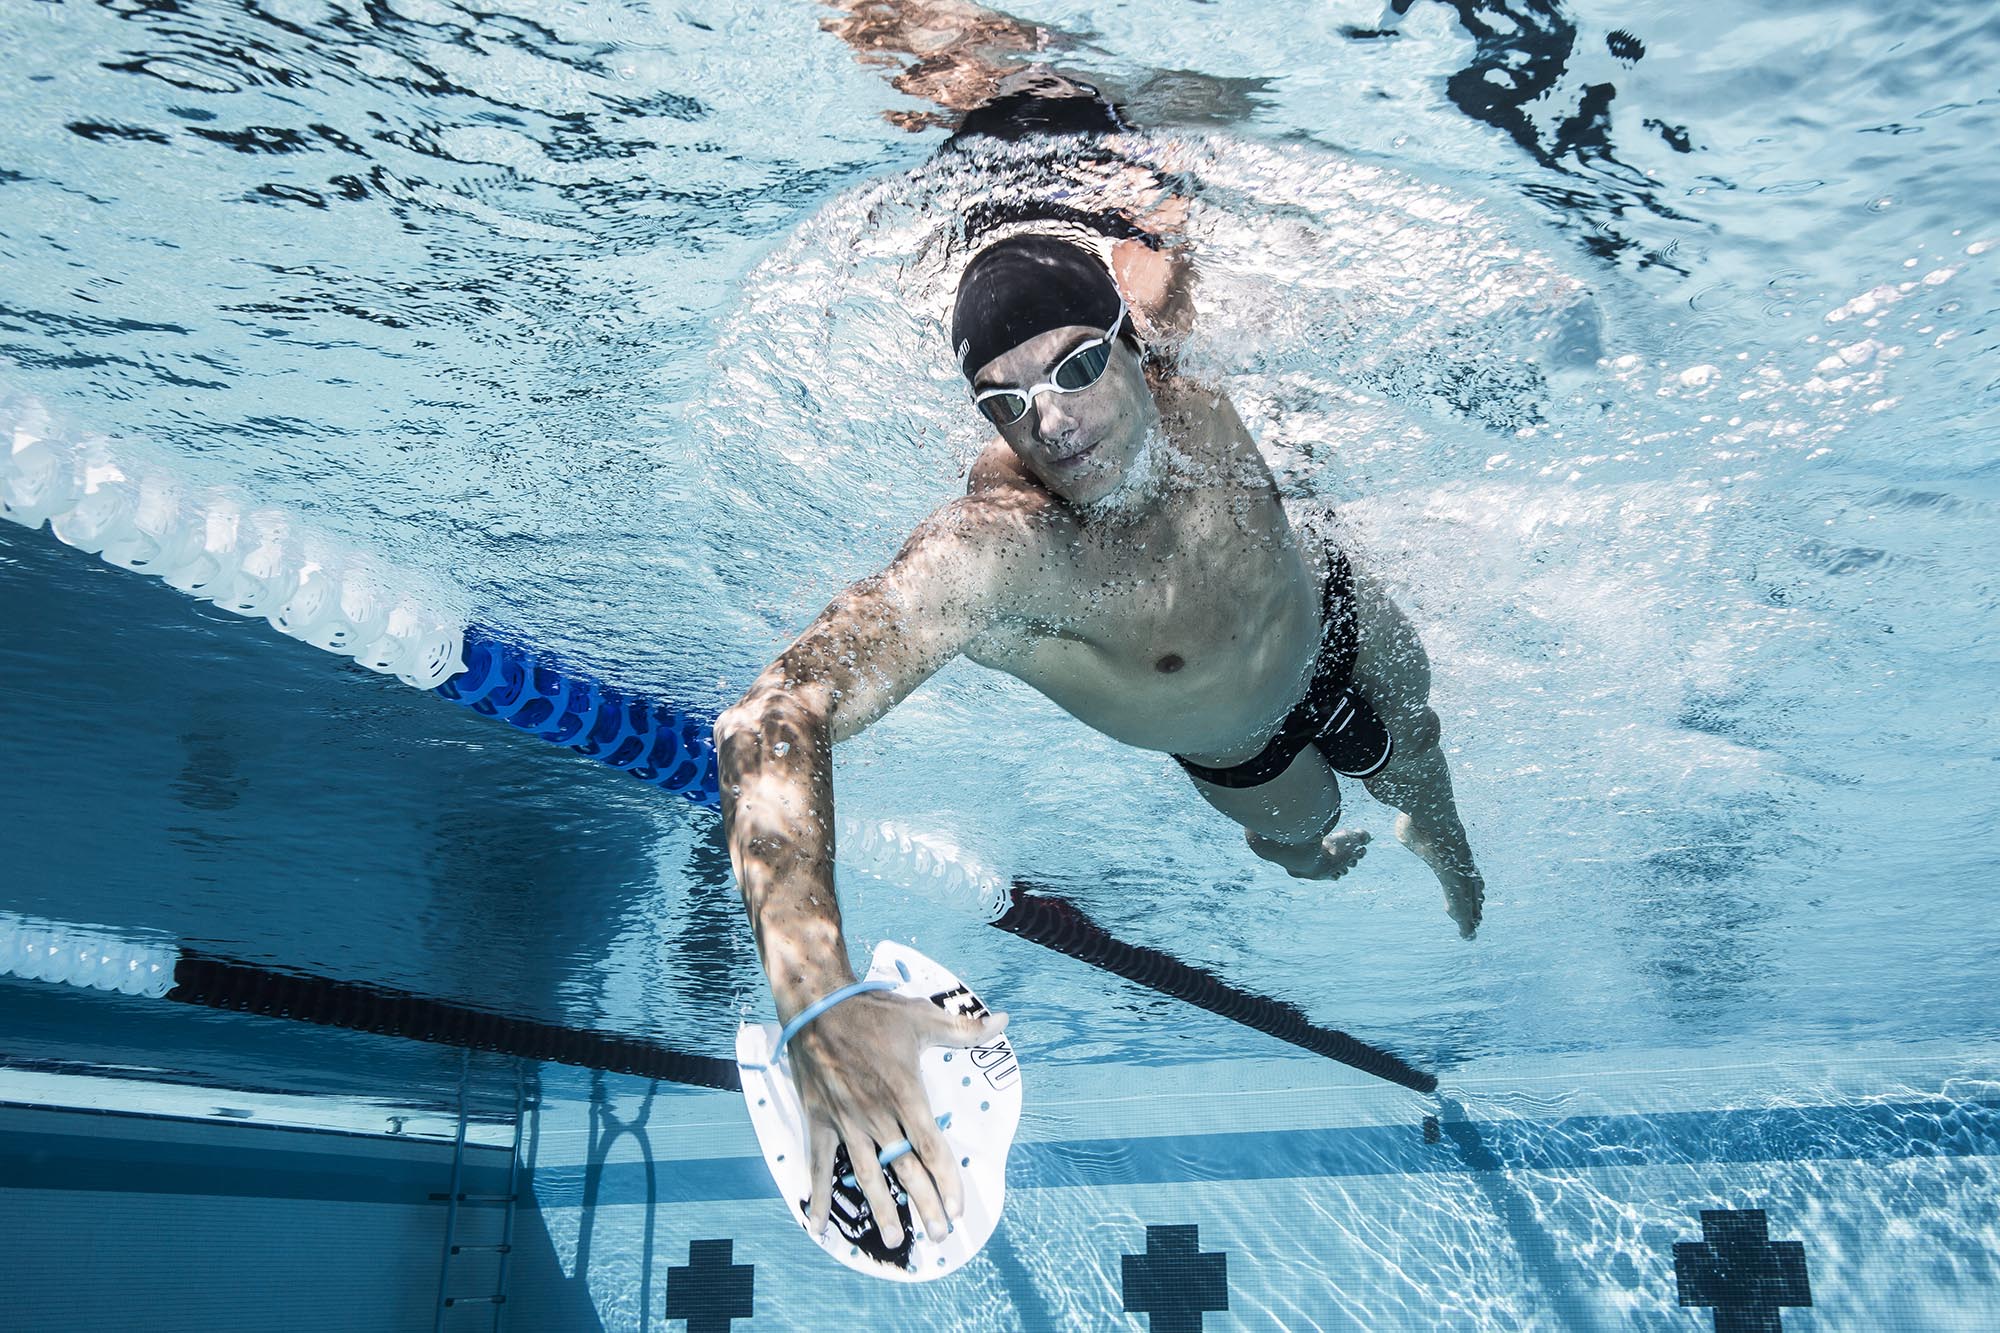 Les paddles ou plaquettes de natation : pour améliorer la technique de nage